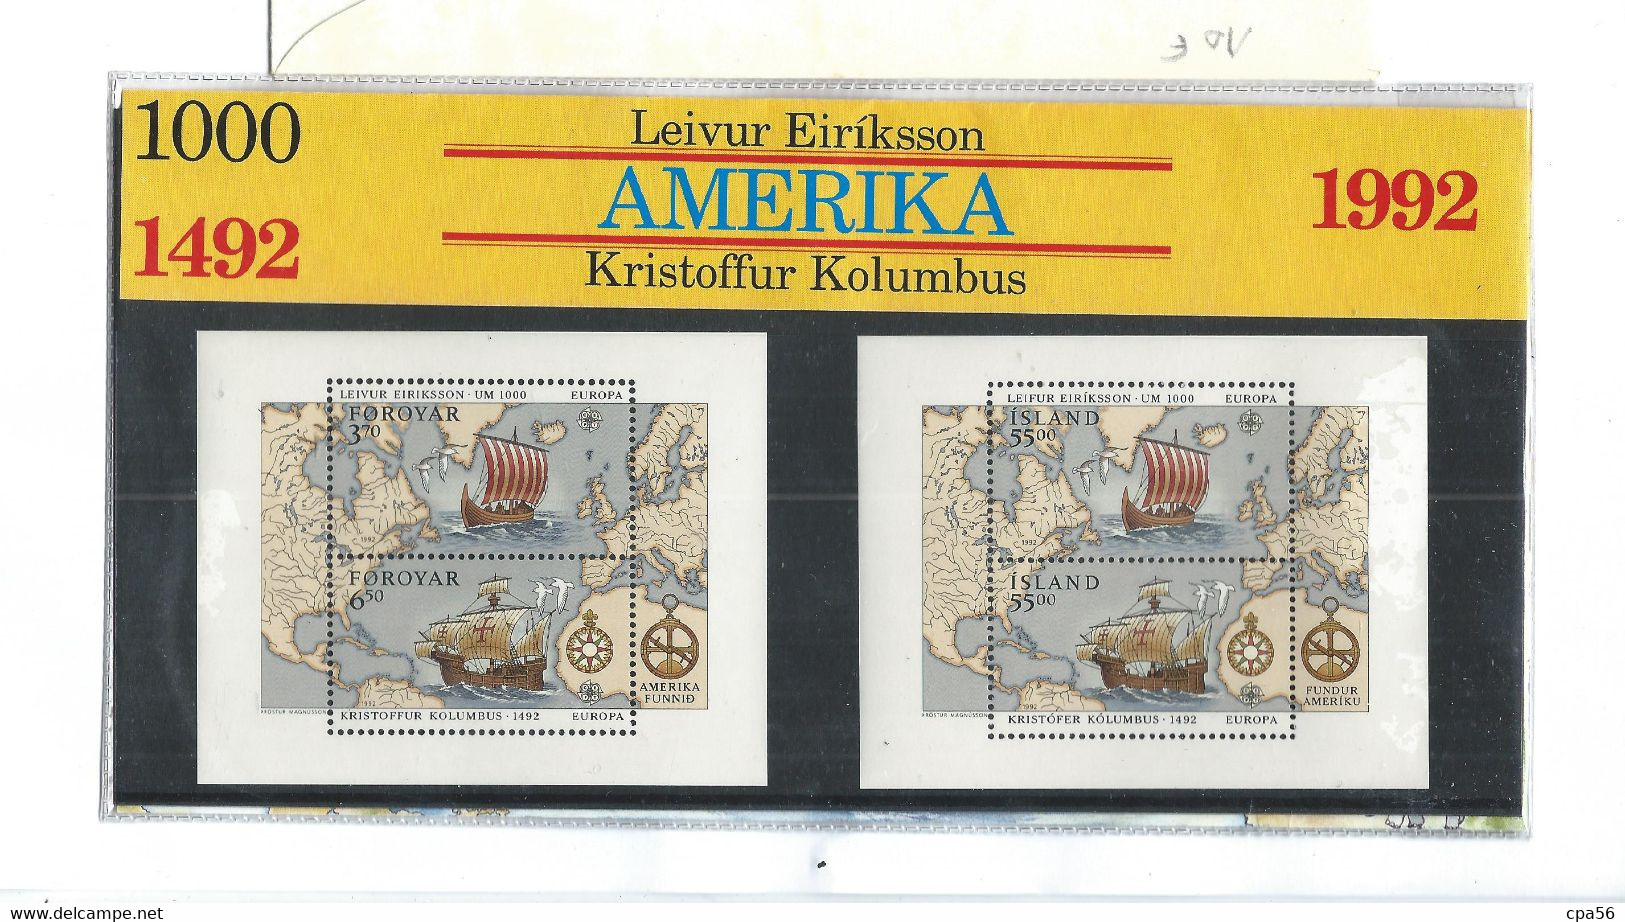 Iceland Island And Faroe Islands 1992 Leivur Eiriksson / Kristoffur Kolumbus Amerika, Folder With Blocs MNH(**) - Unused Stamps